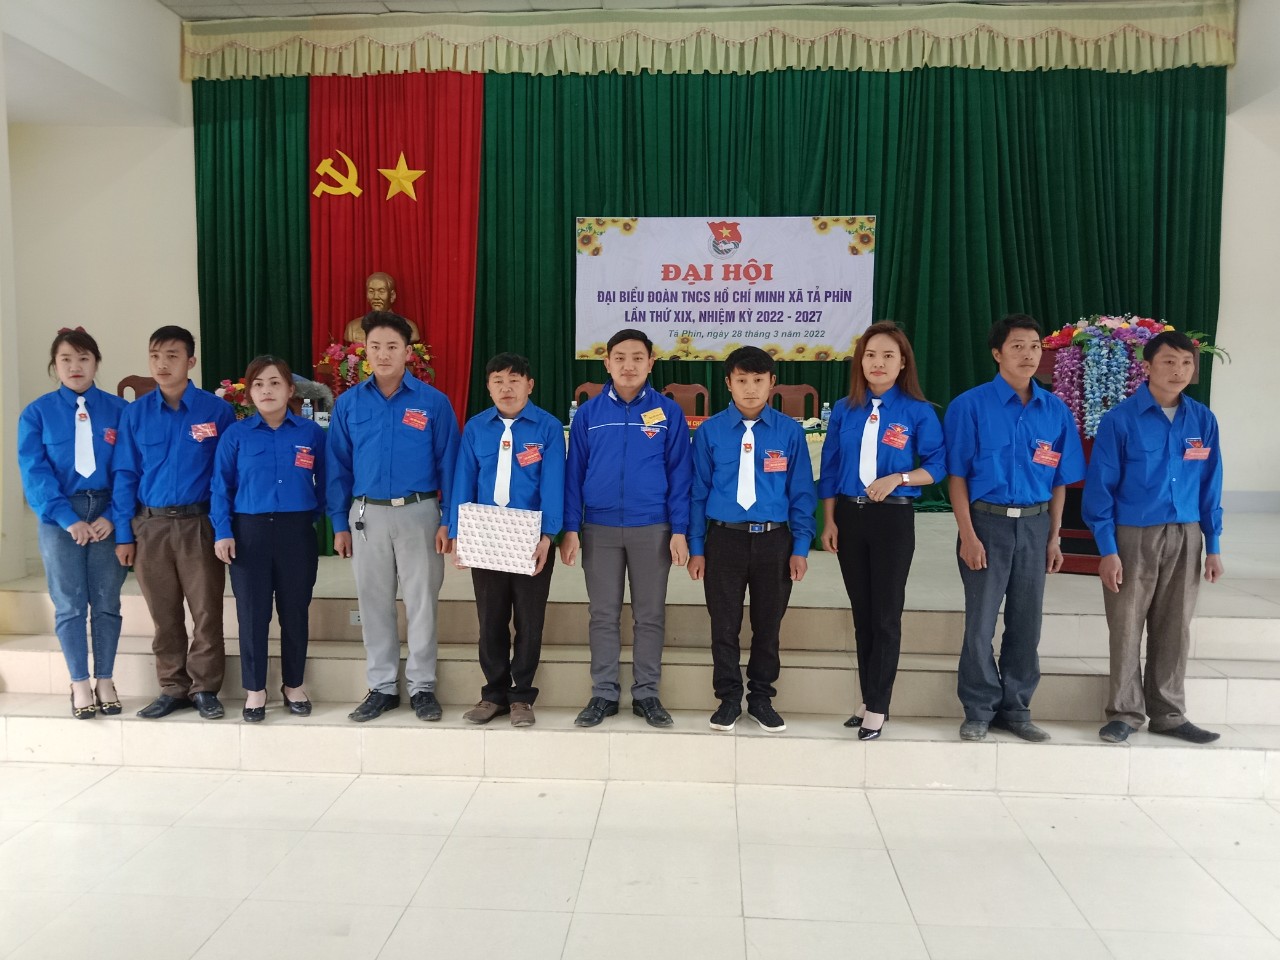 Đại hội đại biểu Đoàn TNCS Hồ Chí Minh xã Tả Phìn  lần thứ XIX, nhiệm kỳ 2022 - 2027